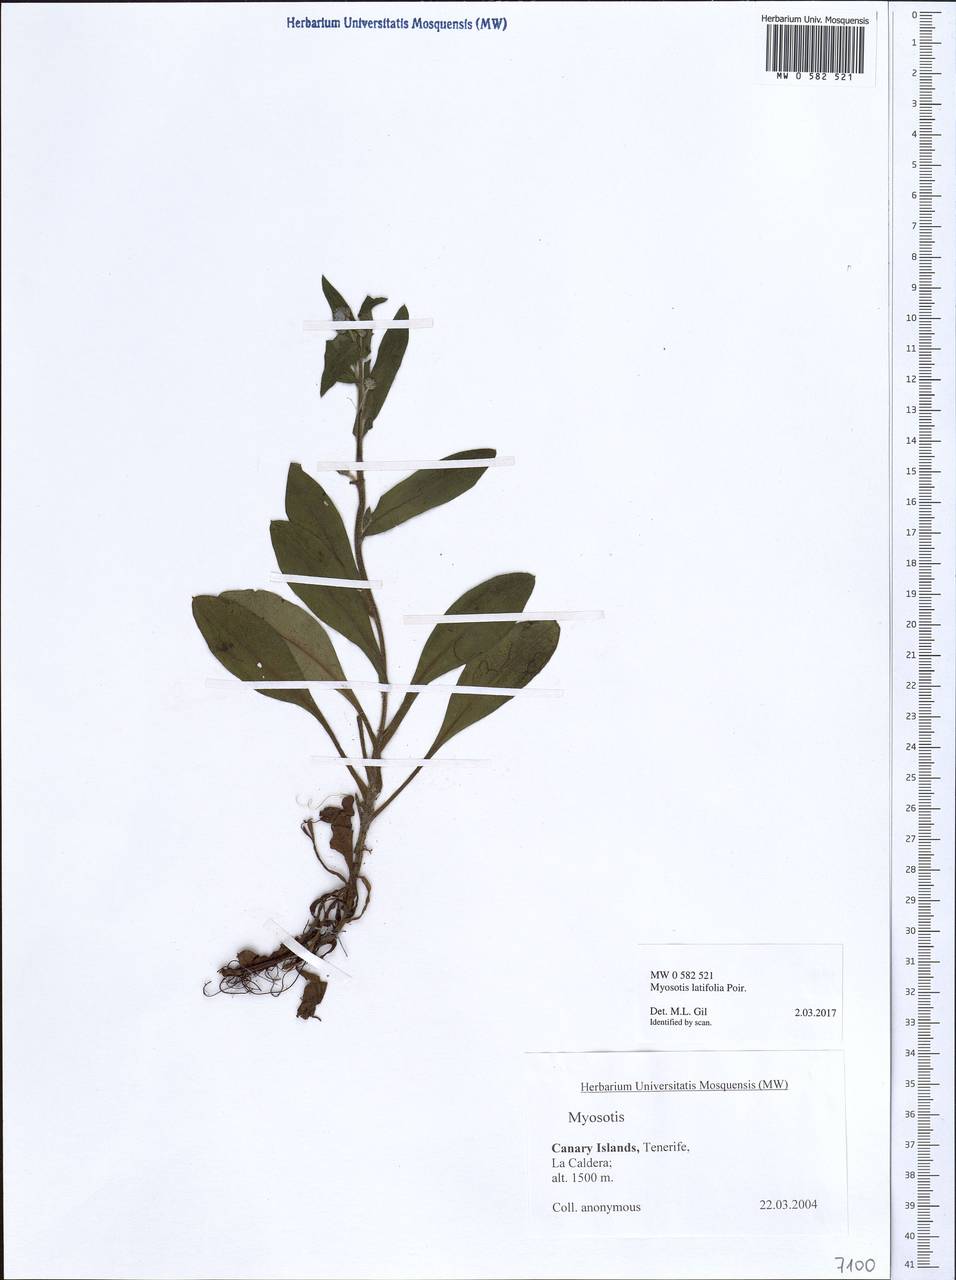 Myosotis latifolia Poir., Африка (AFR) (Испания)